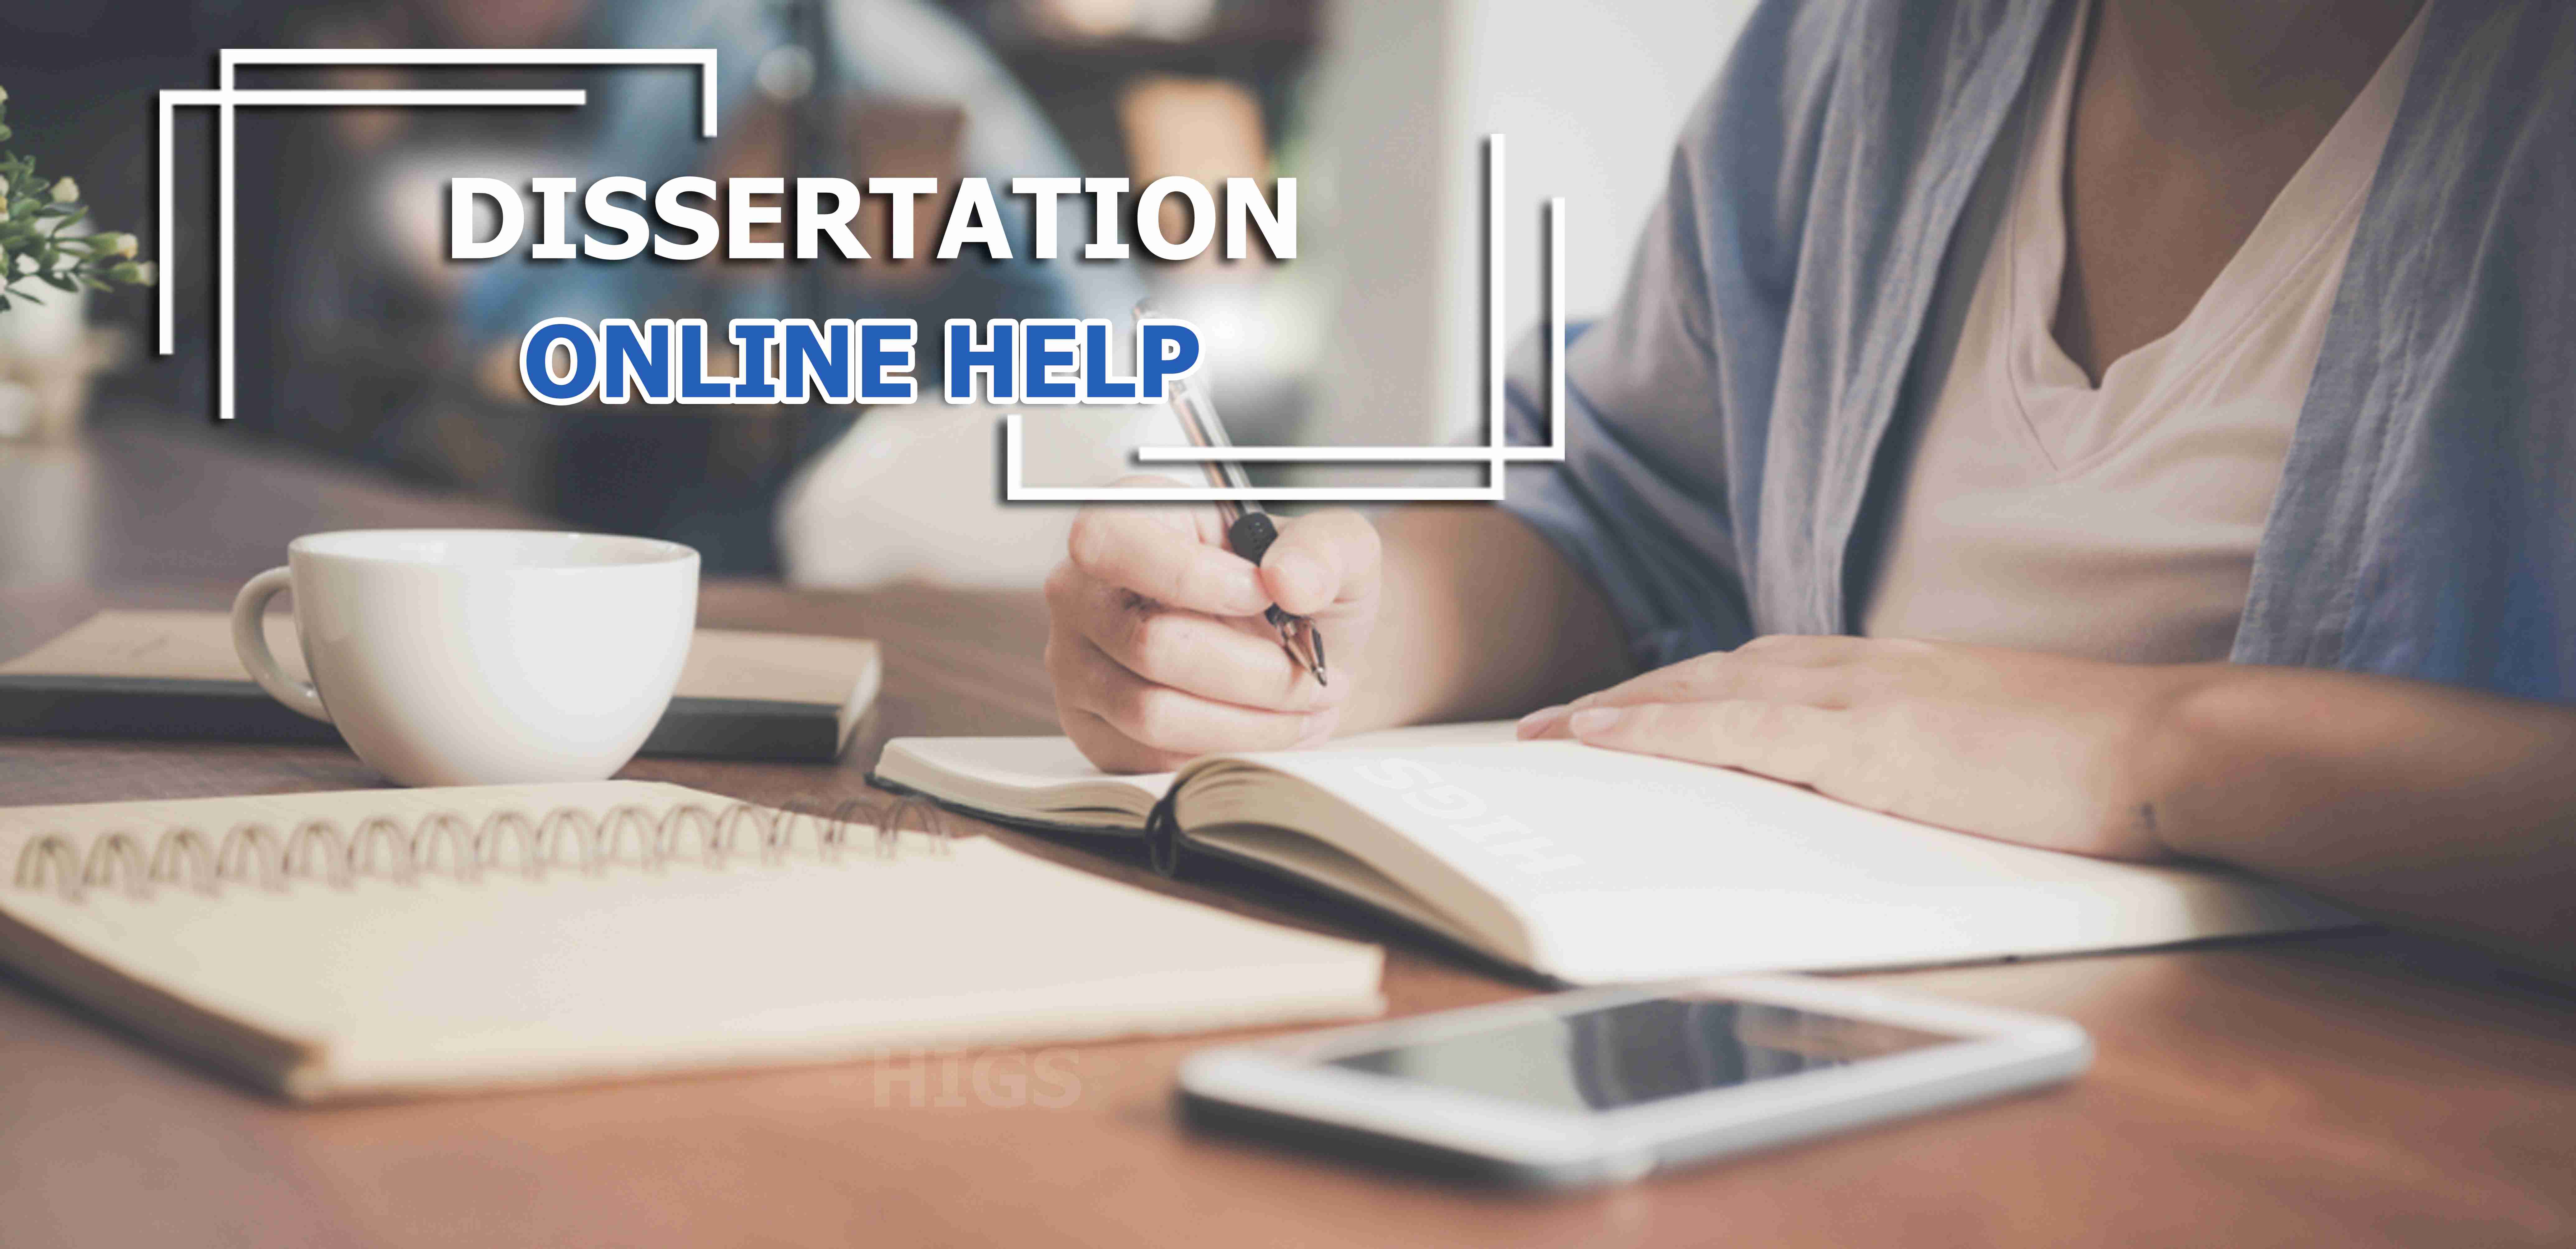 Dissertation-online-help-compressed